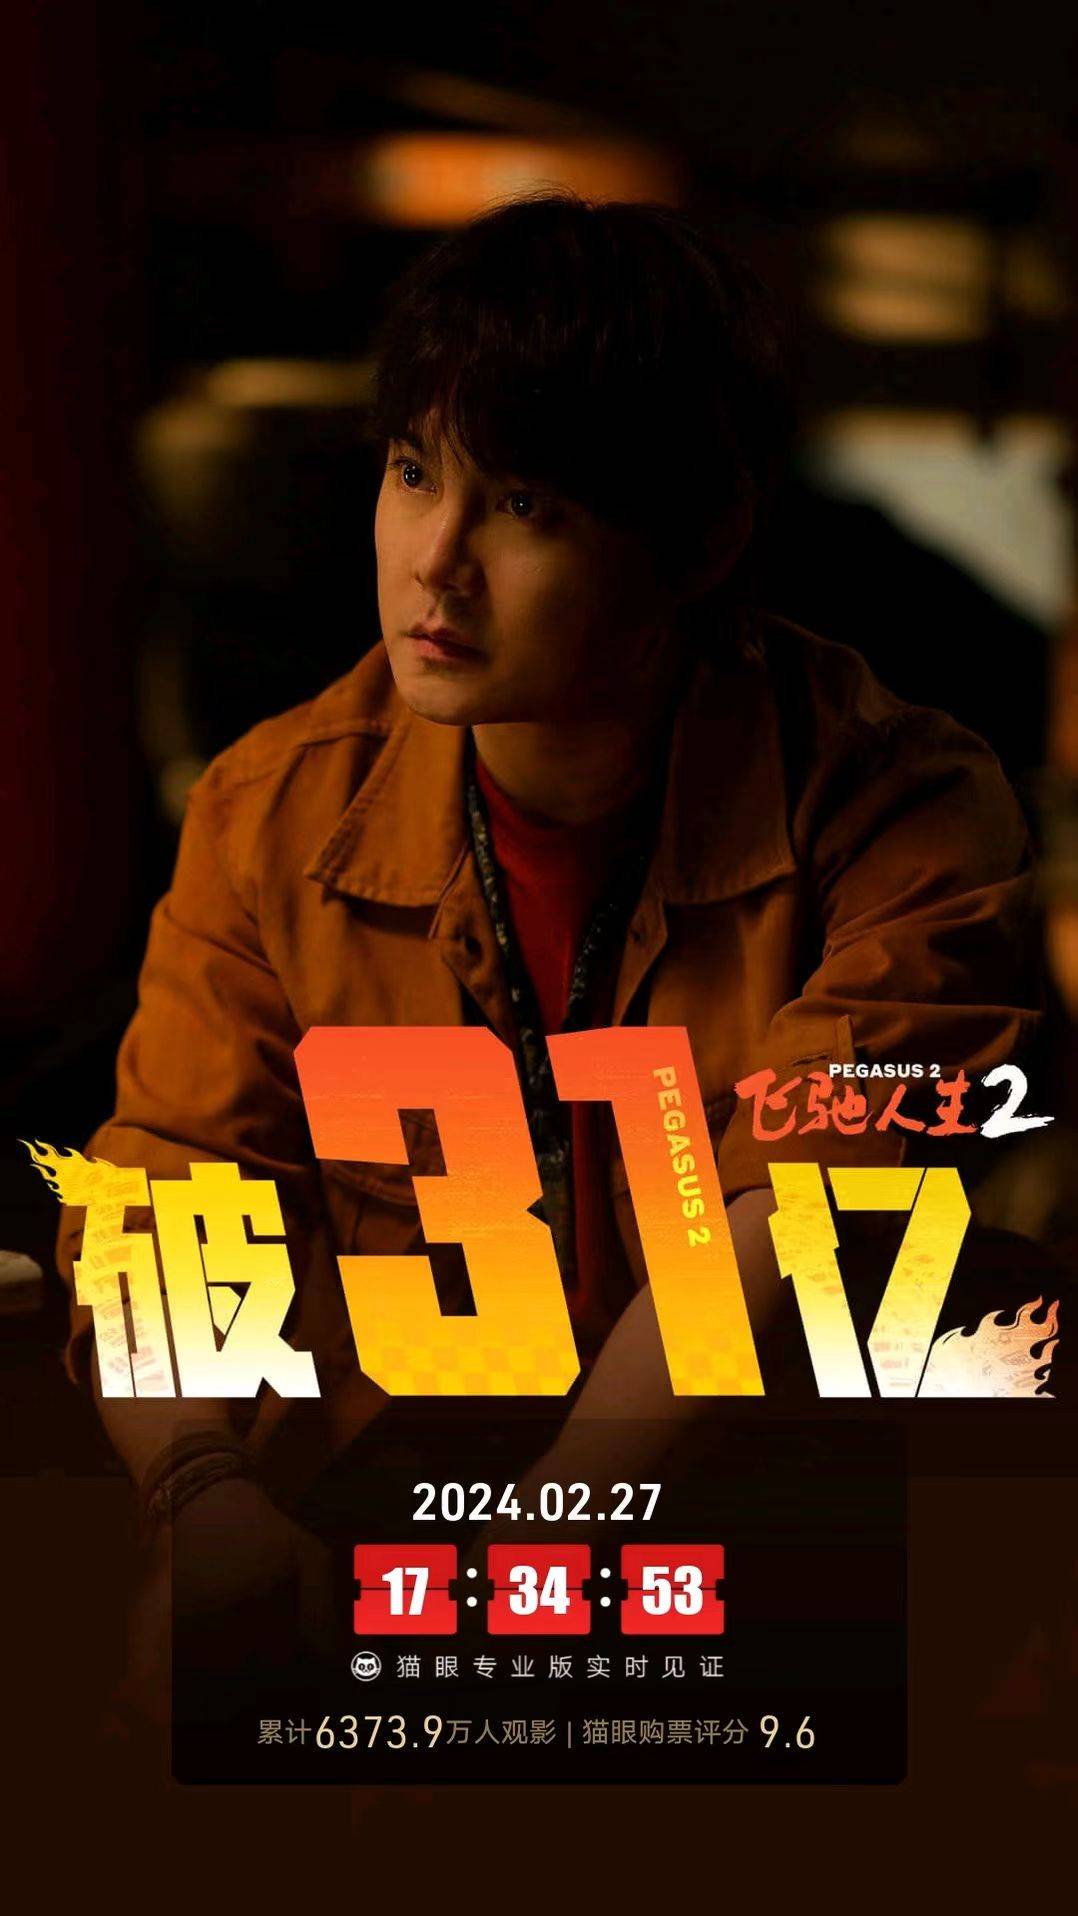 韩寒执导电影《飞驰人生2》上映第18天累计票房破31亿 累计观影人次6373.9万